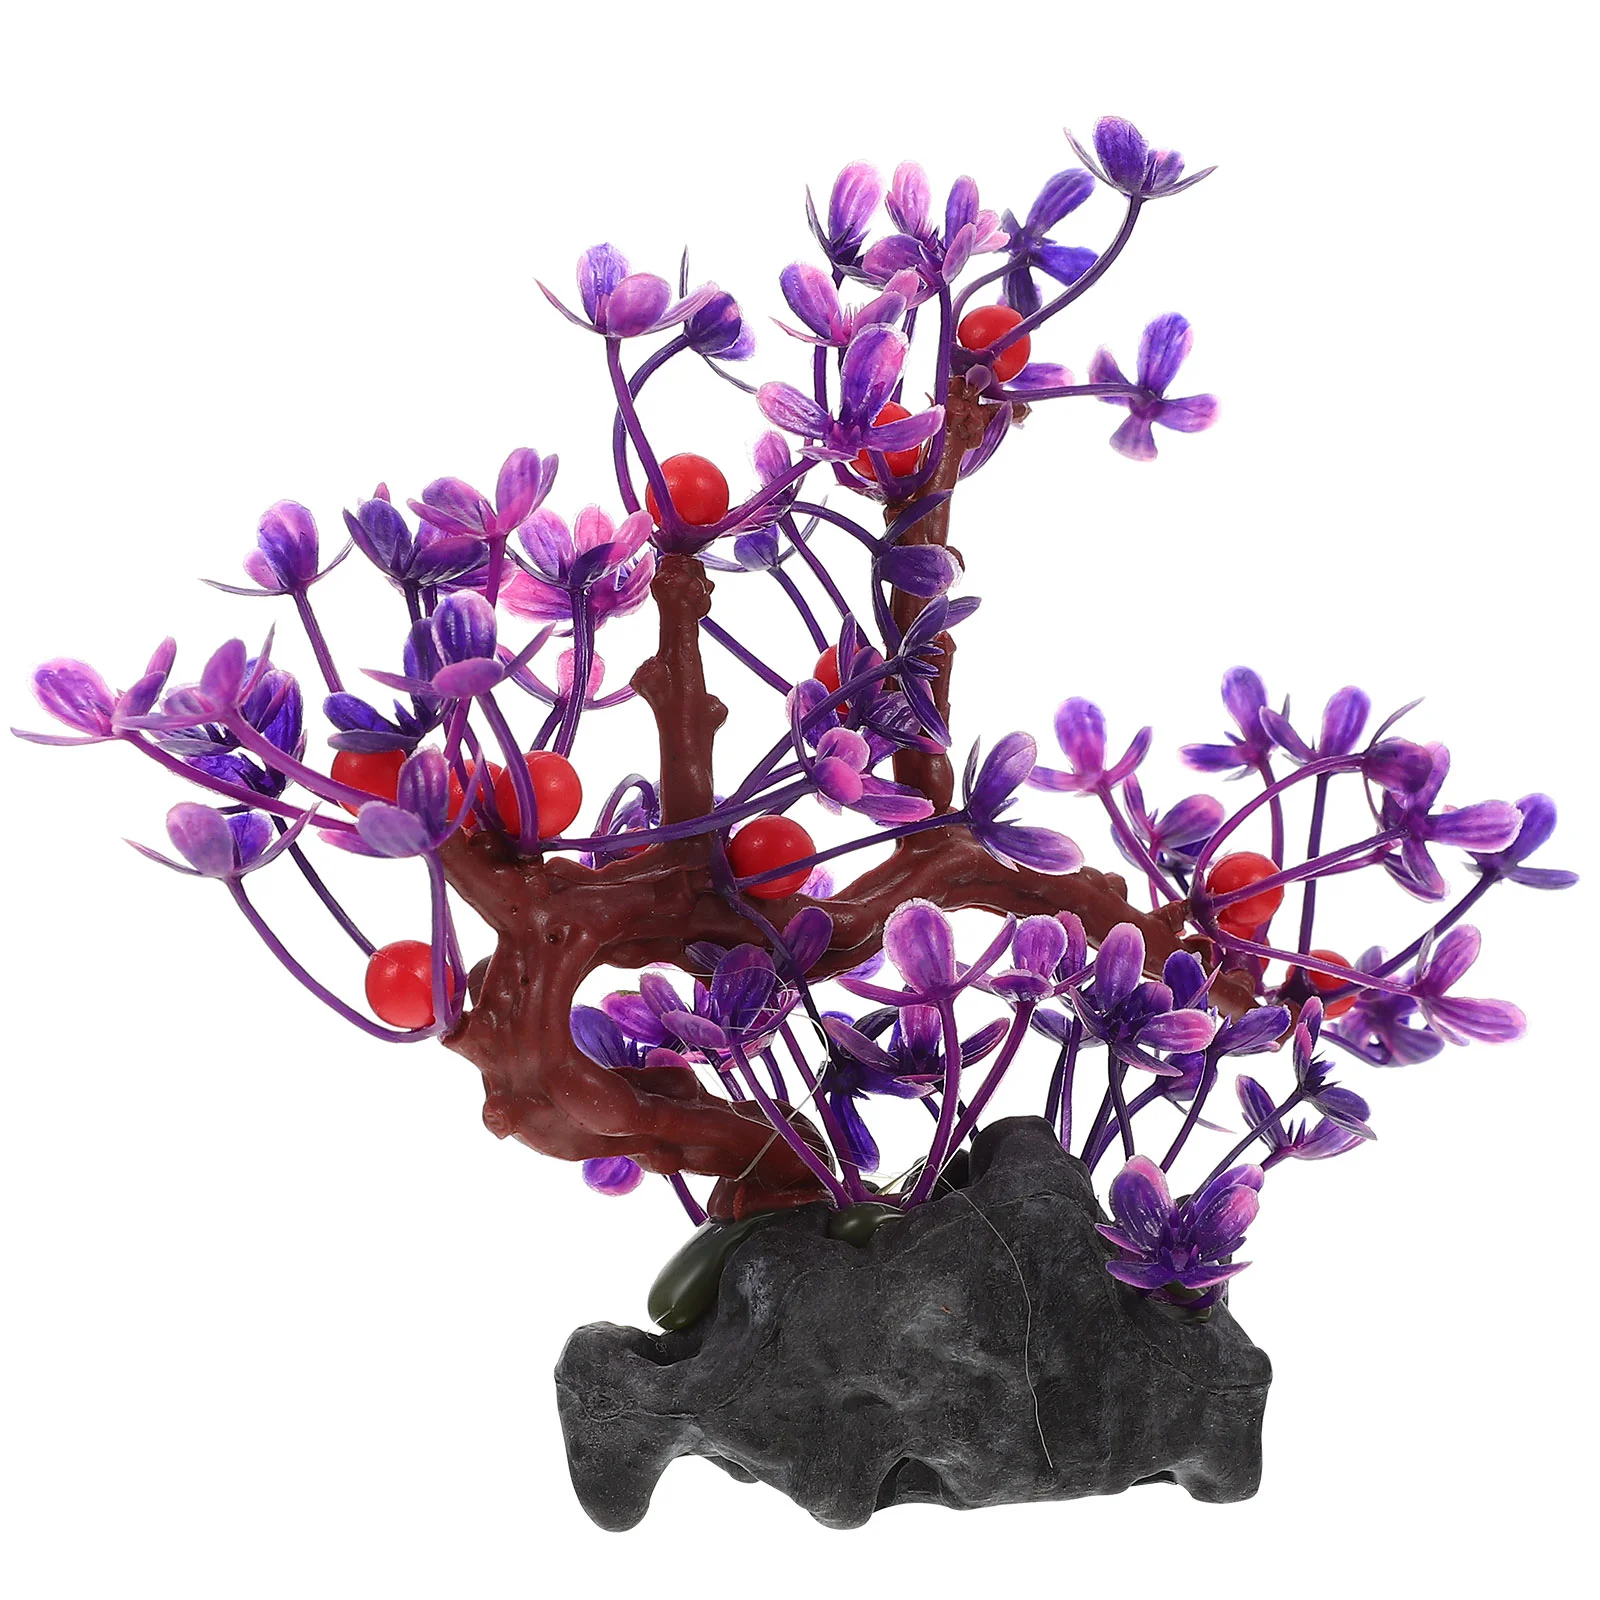 

Аквариумное растение для украшения, имитация водного растения, декоративное пластиковое растение (фиолетовый)